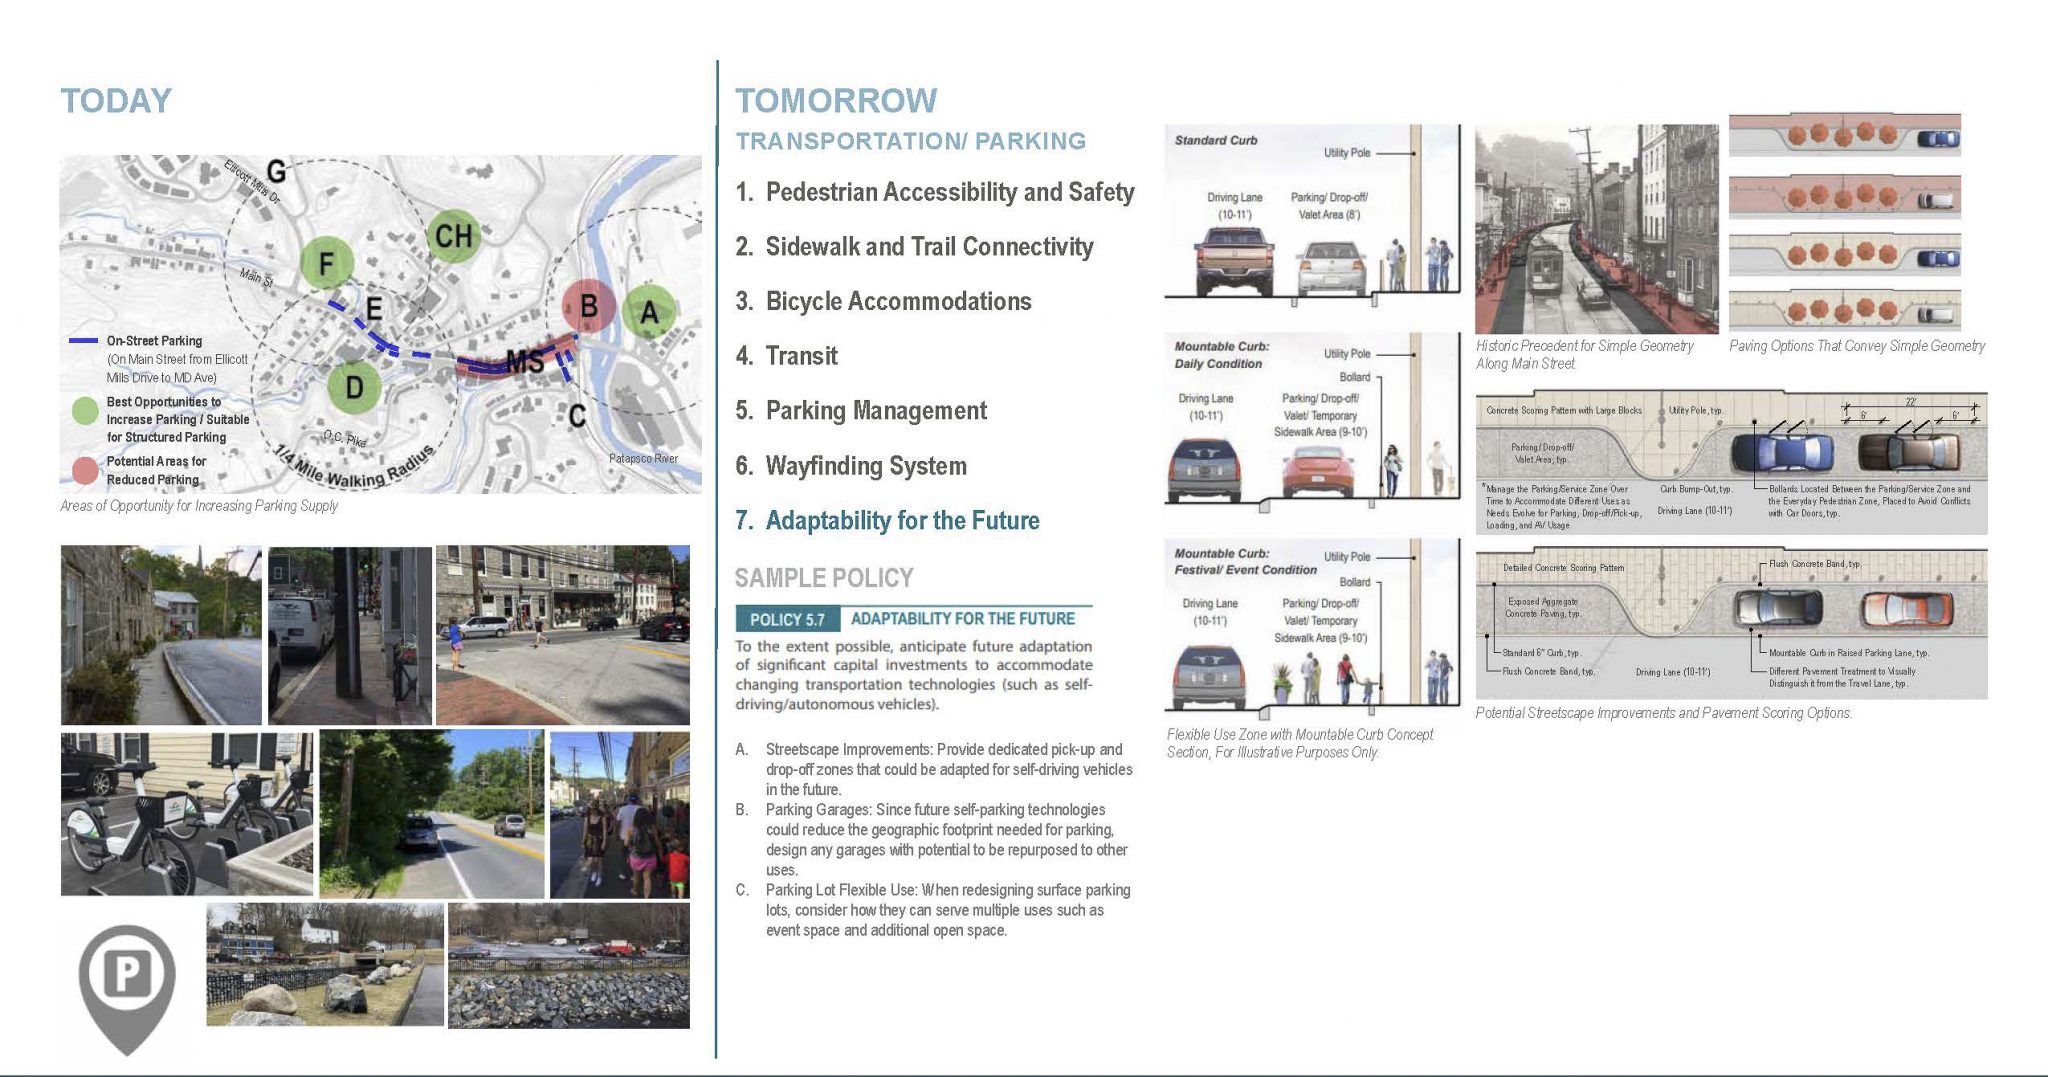 Ellicott City Master Plan: TRANSPORTATION/ PARKING